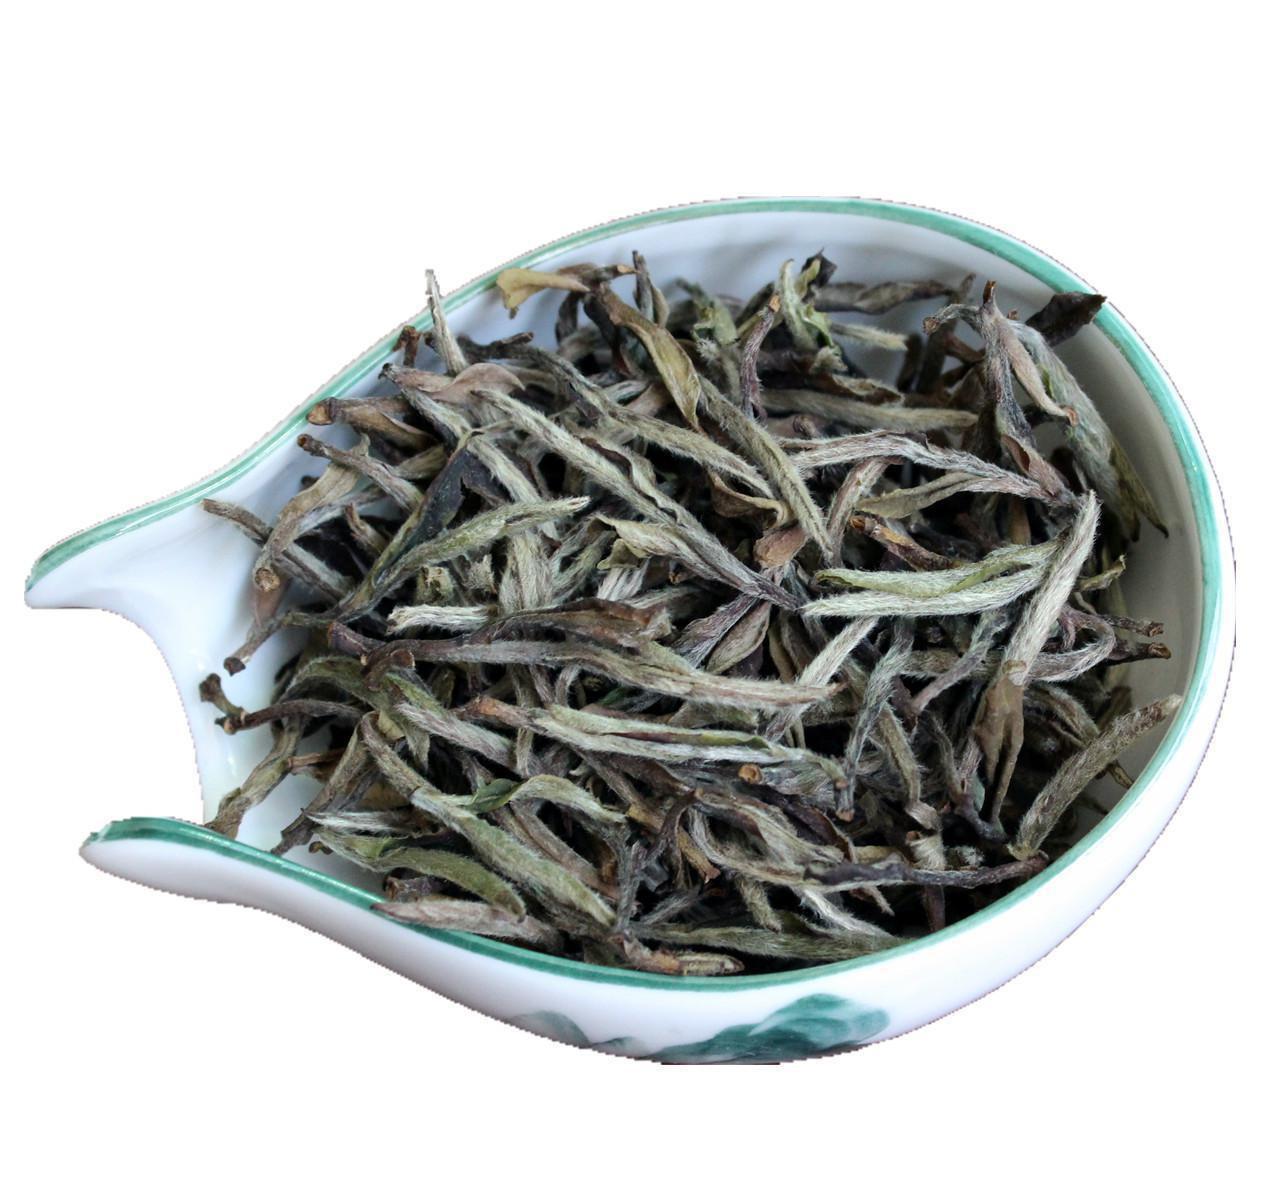 寿眉茶饼沏茶要领,福鼎白茶的品种主要按采制方式来分类